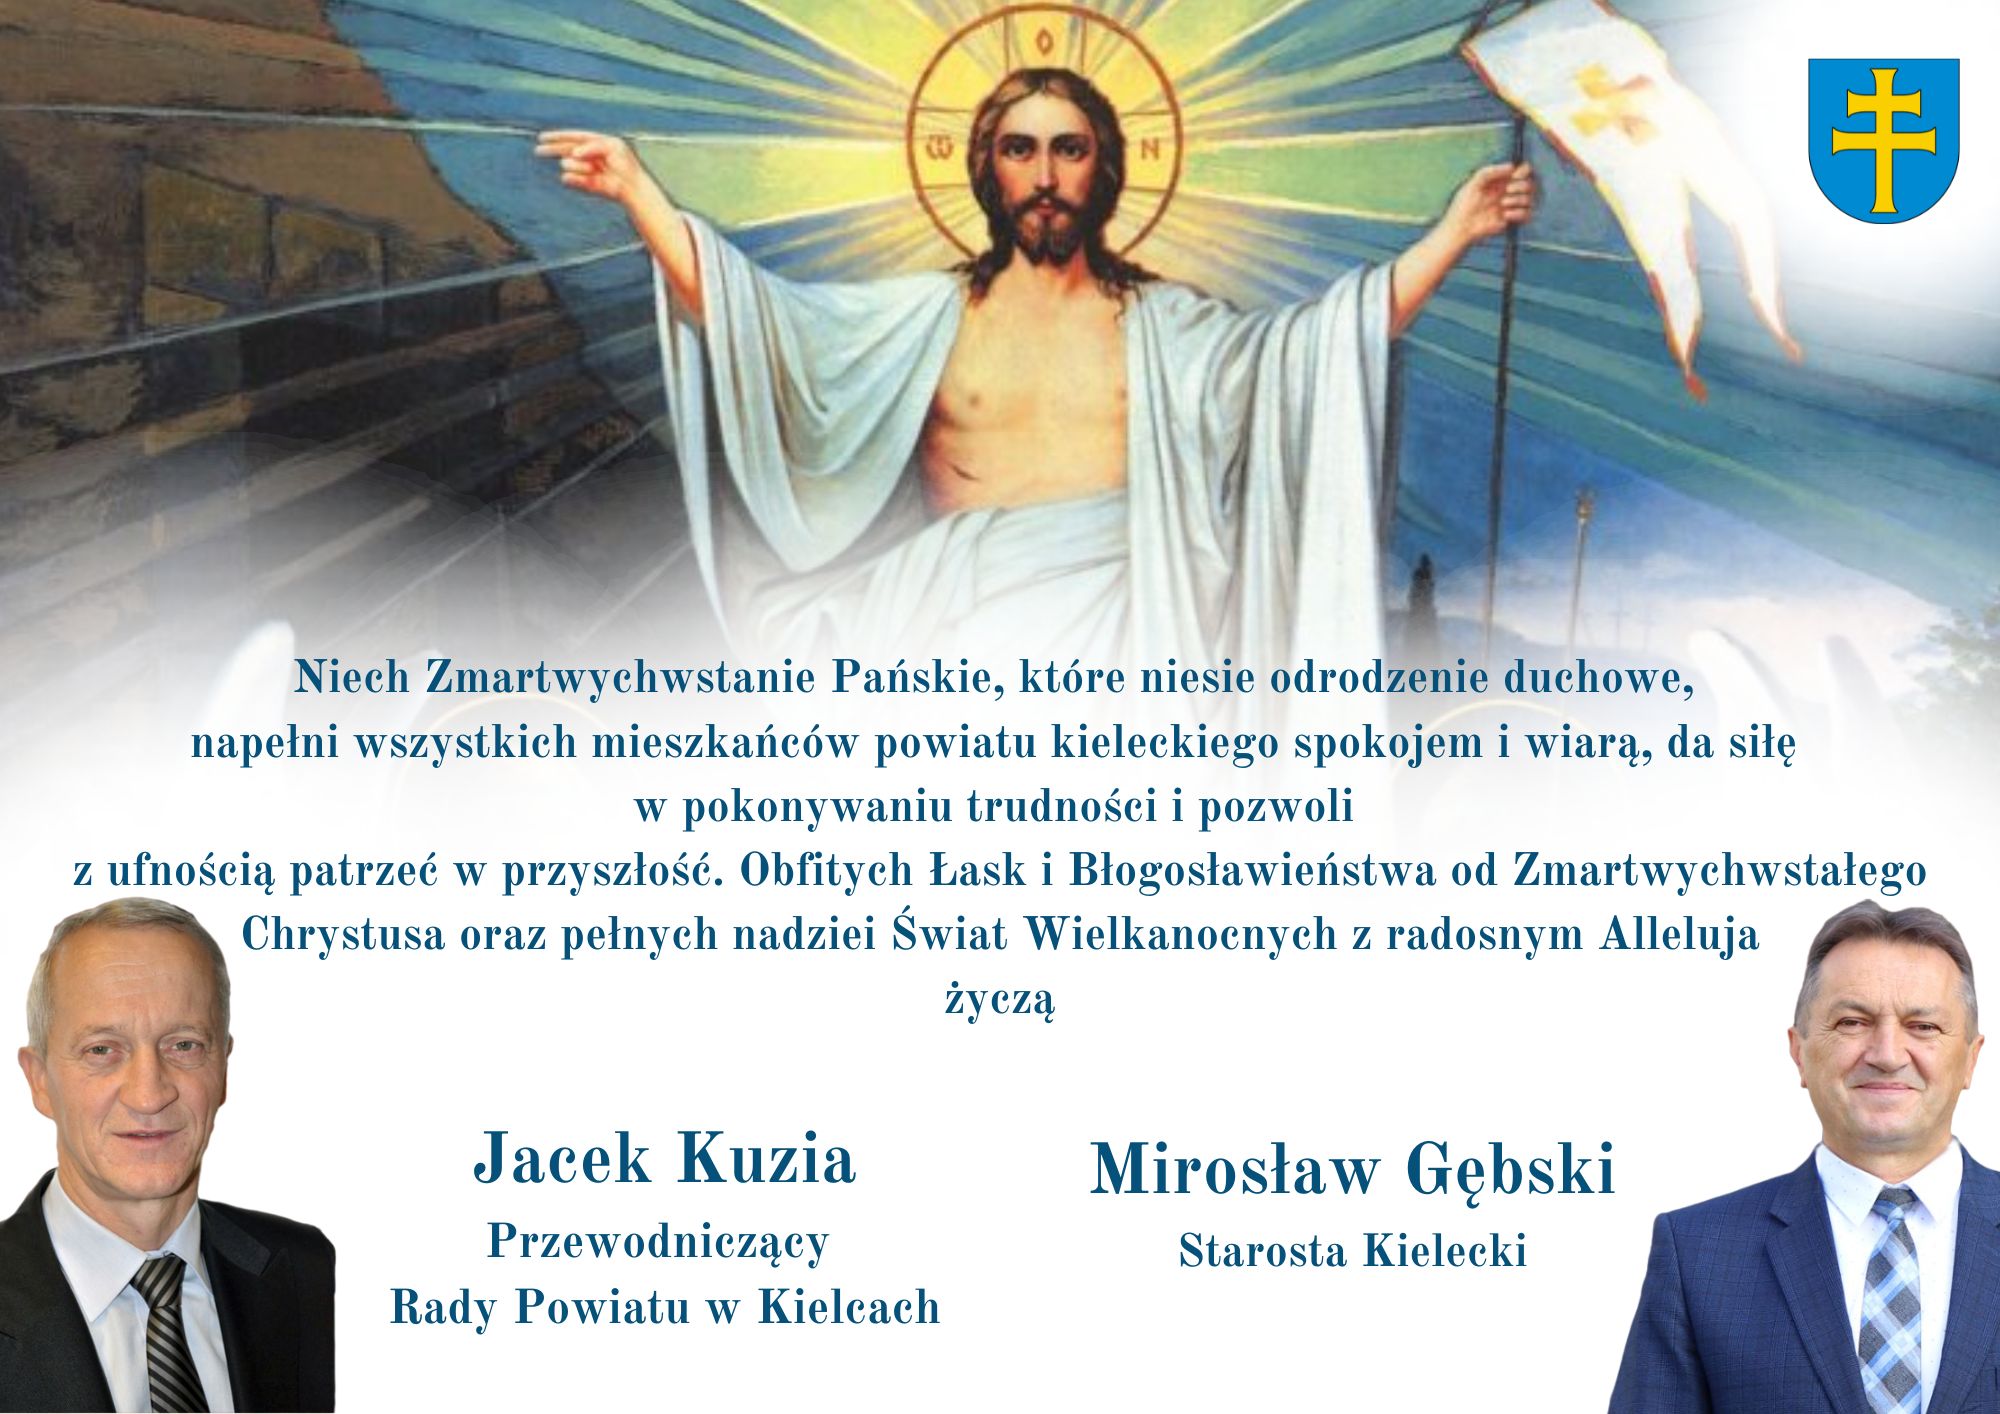 Życzenia Wielkanocne od Starosty Kieleckiego oraz Przewodniczącego Rady Powiatu w Kielcach